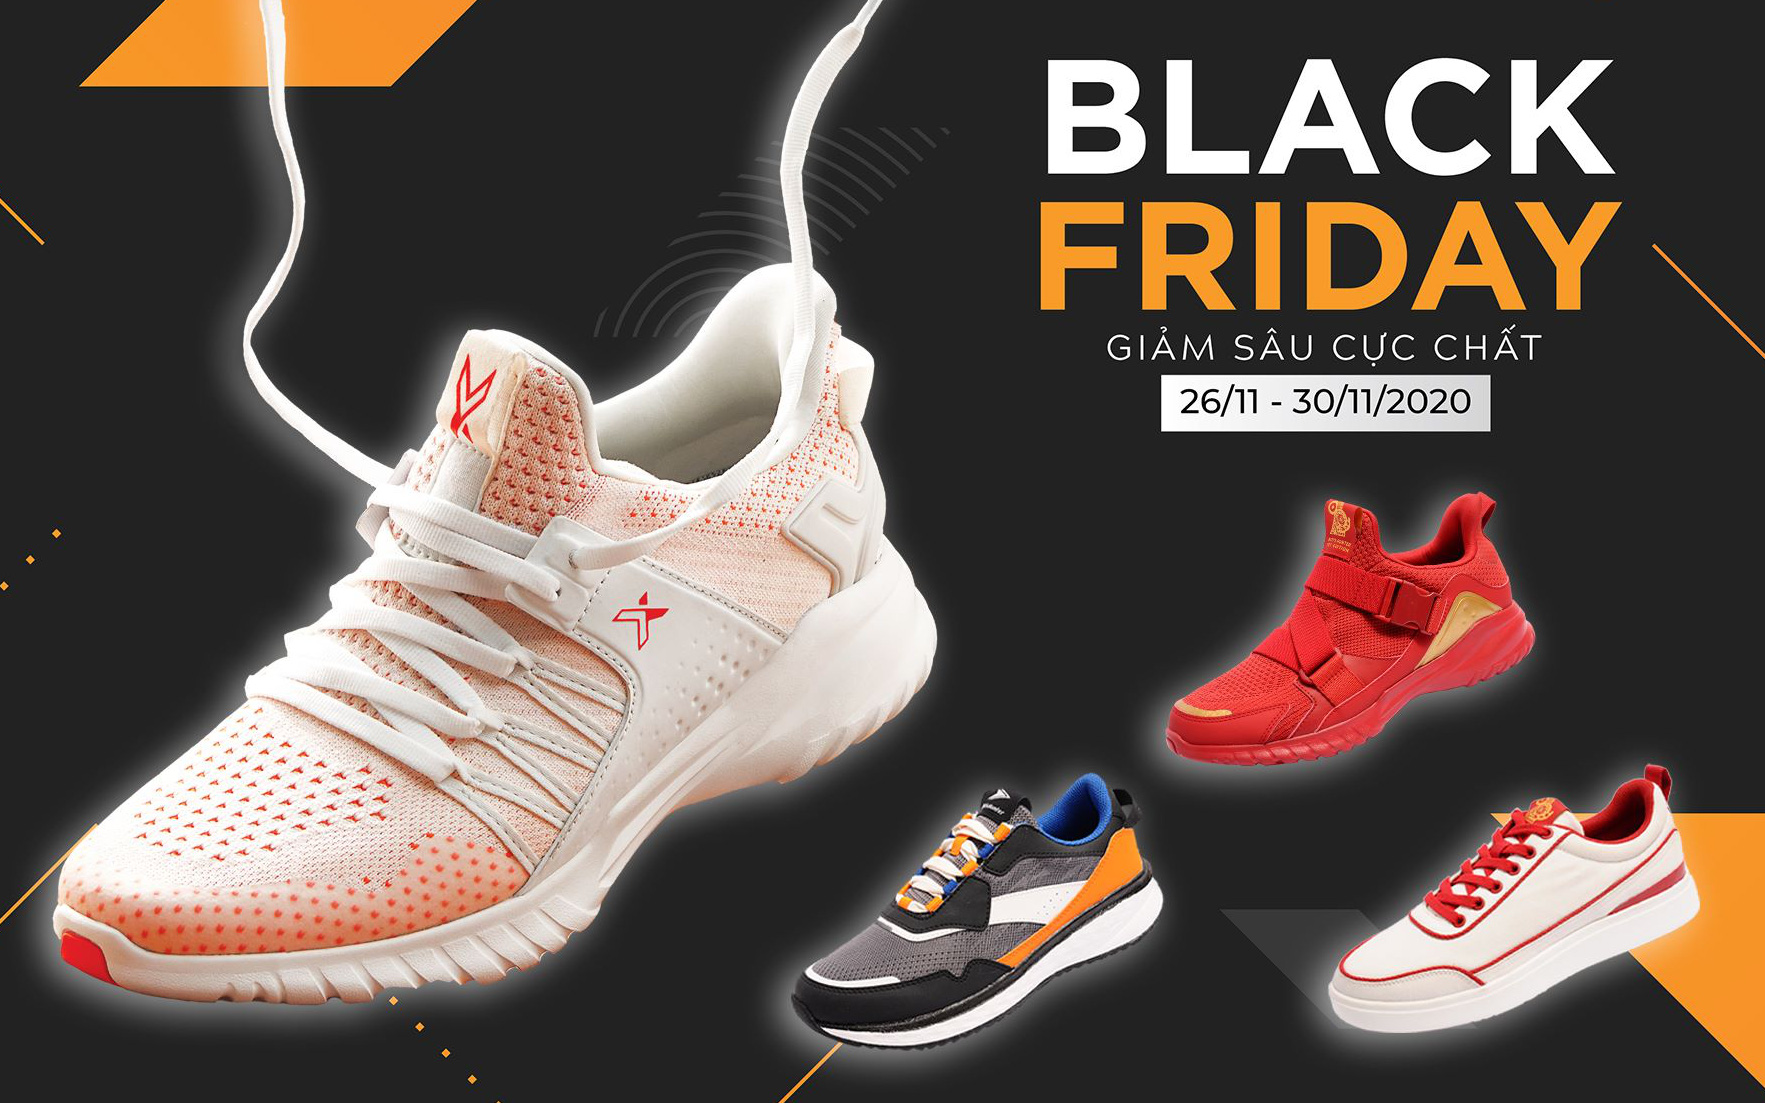 Chỉ còn 1 ngày nữa hết sale Black Friday, tranh thủ sắm sneaker xịn giá tốt các bạn ơi!